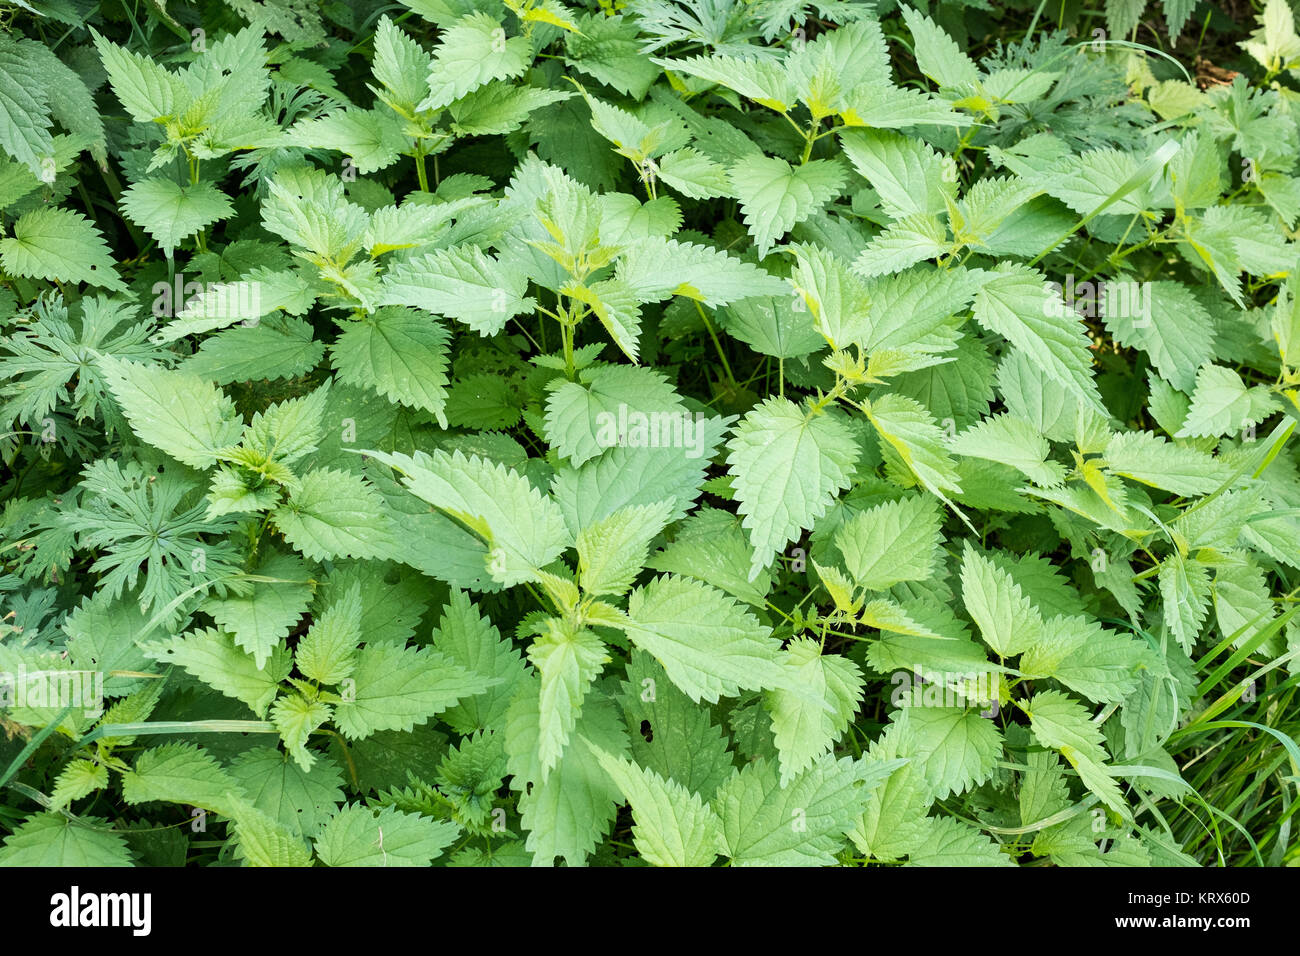 Grüne Brennesseln als Heilpflanze Querformat im Foto Stock